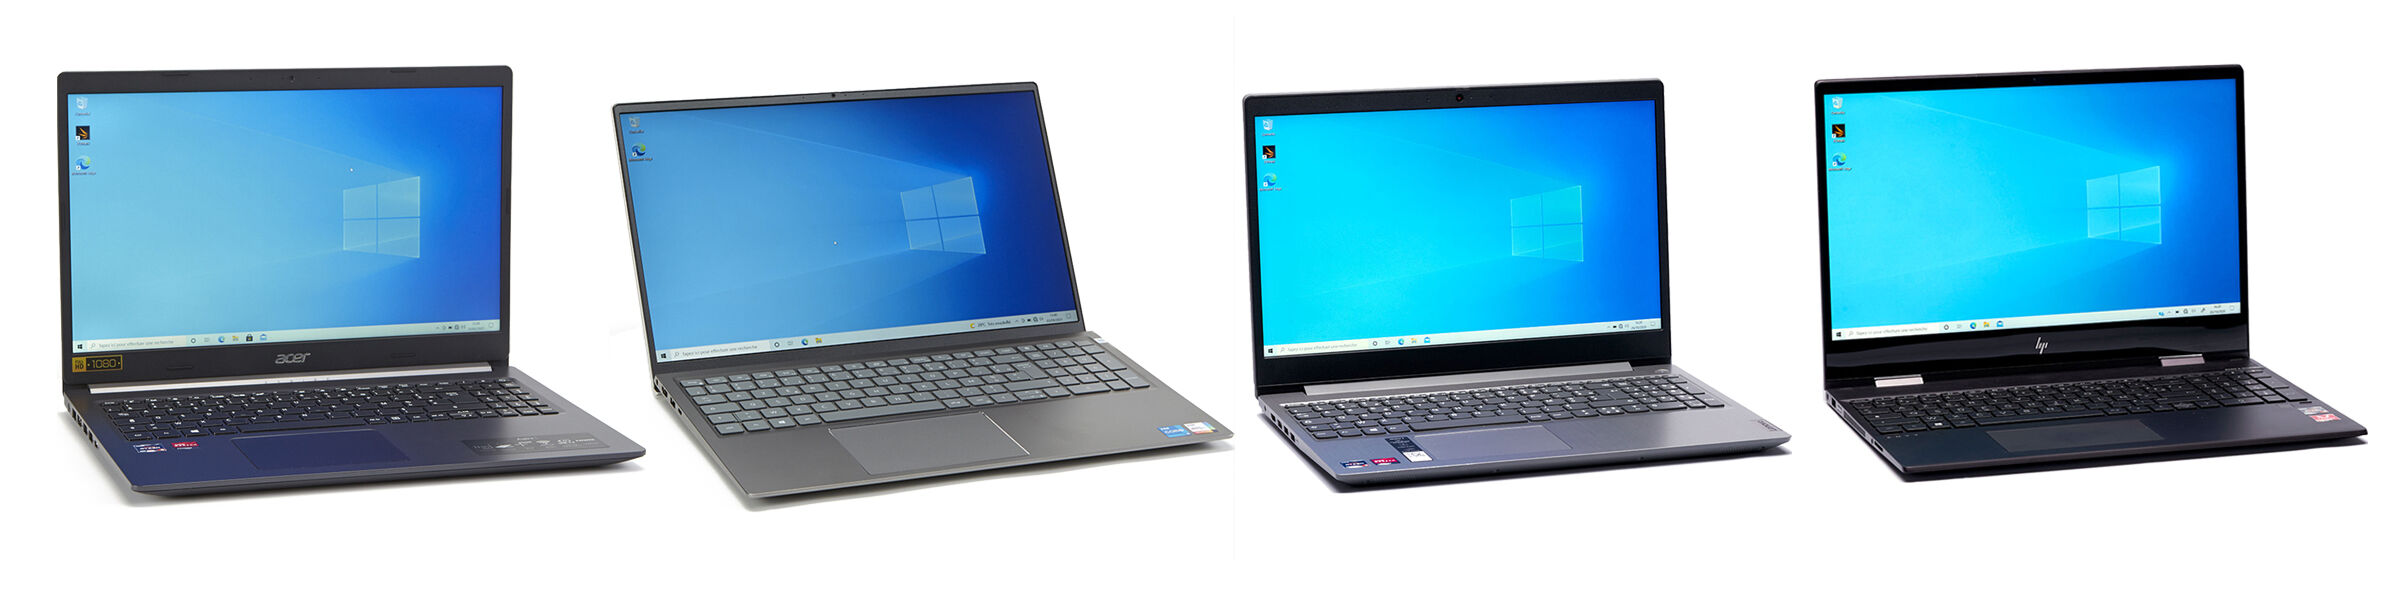 Magasinez les ordinateurs portables Windows — Asus, Acer